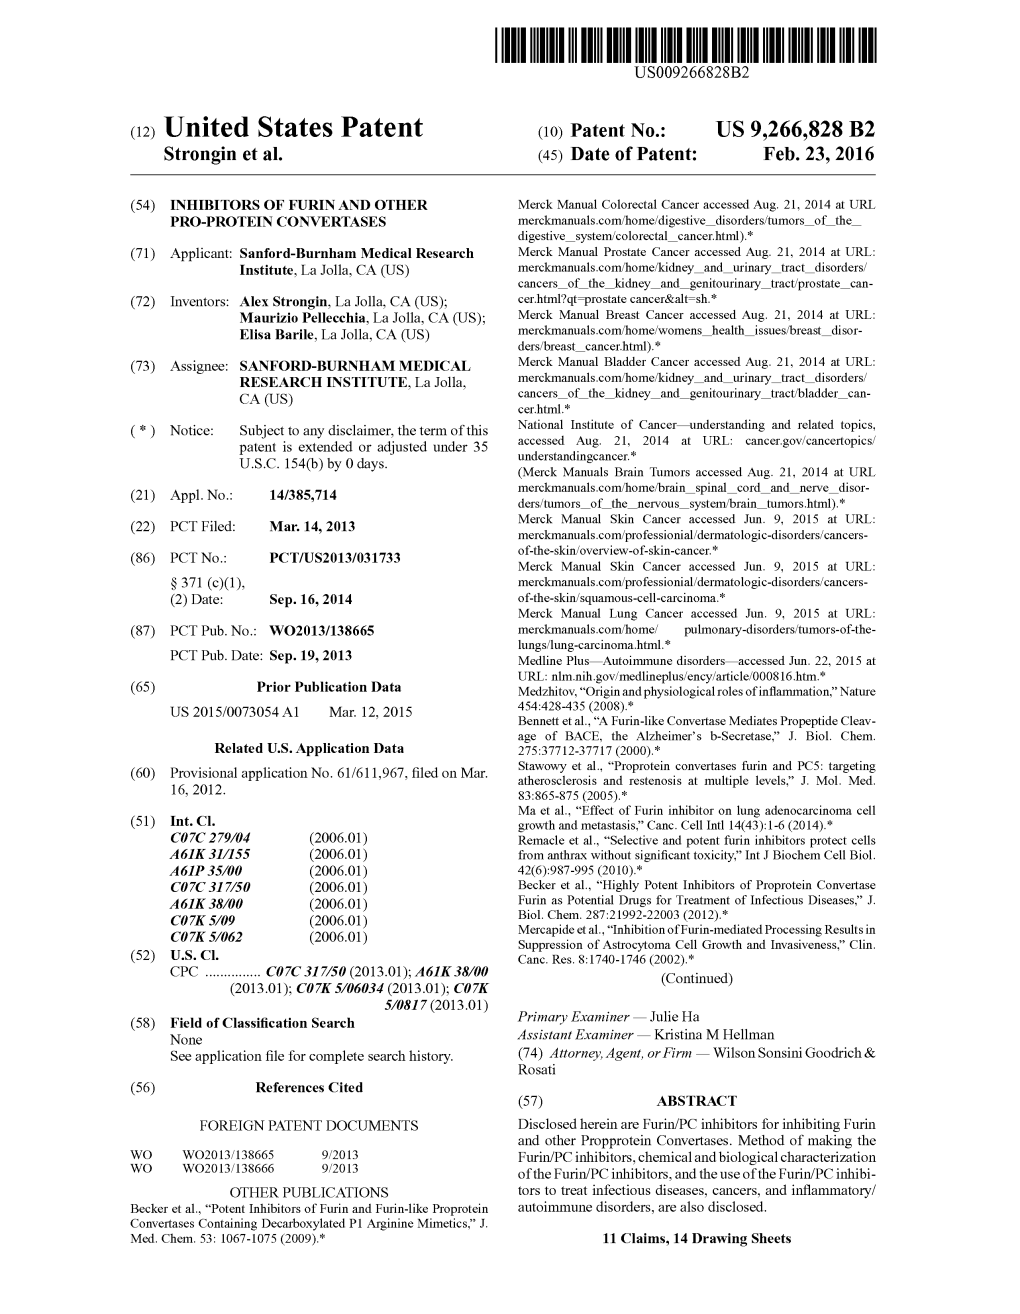 United States Patent (Io) Patent No.: US 9,266,828 B2 Strongin Et Al